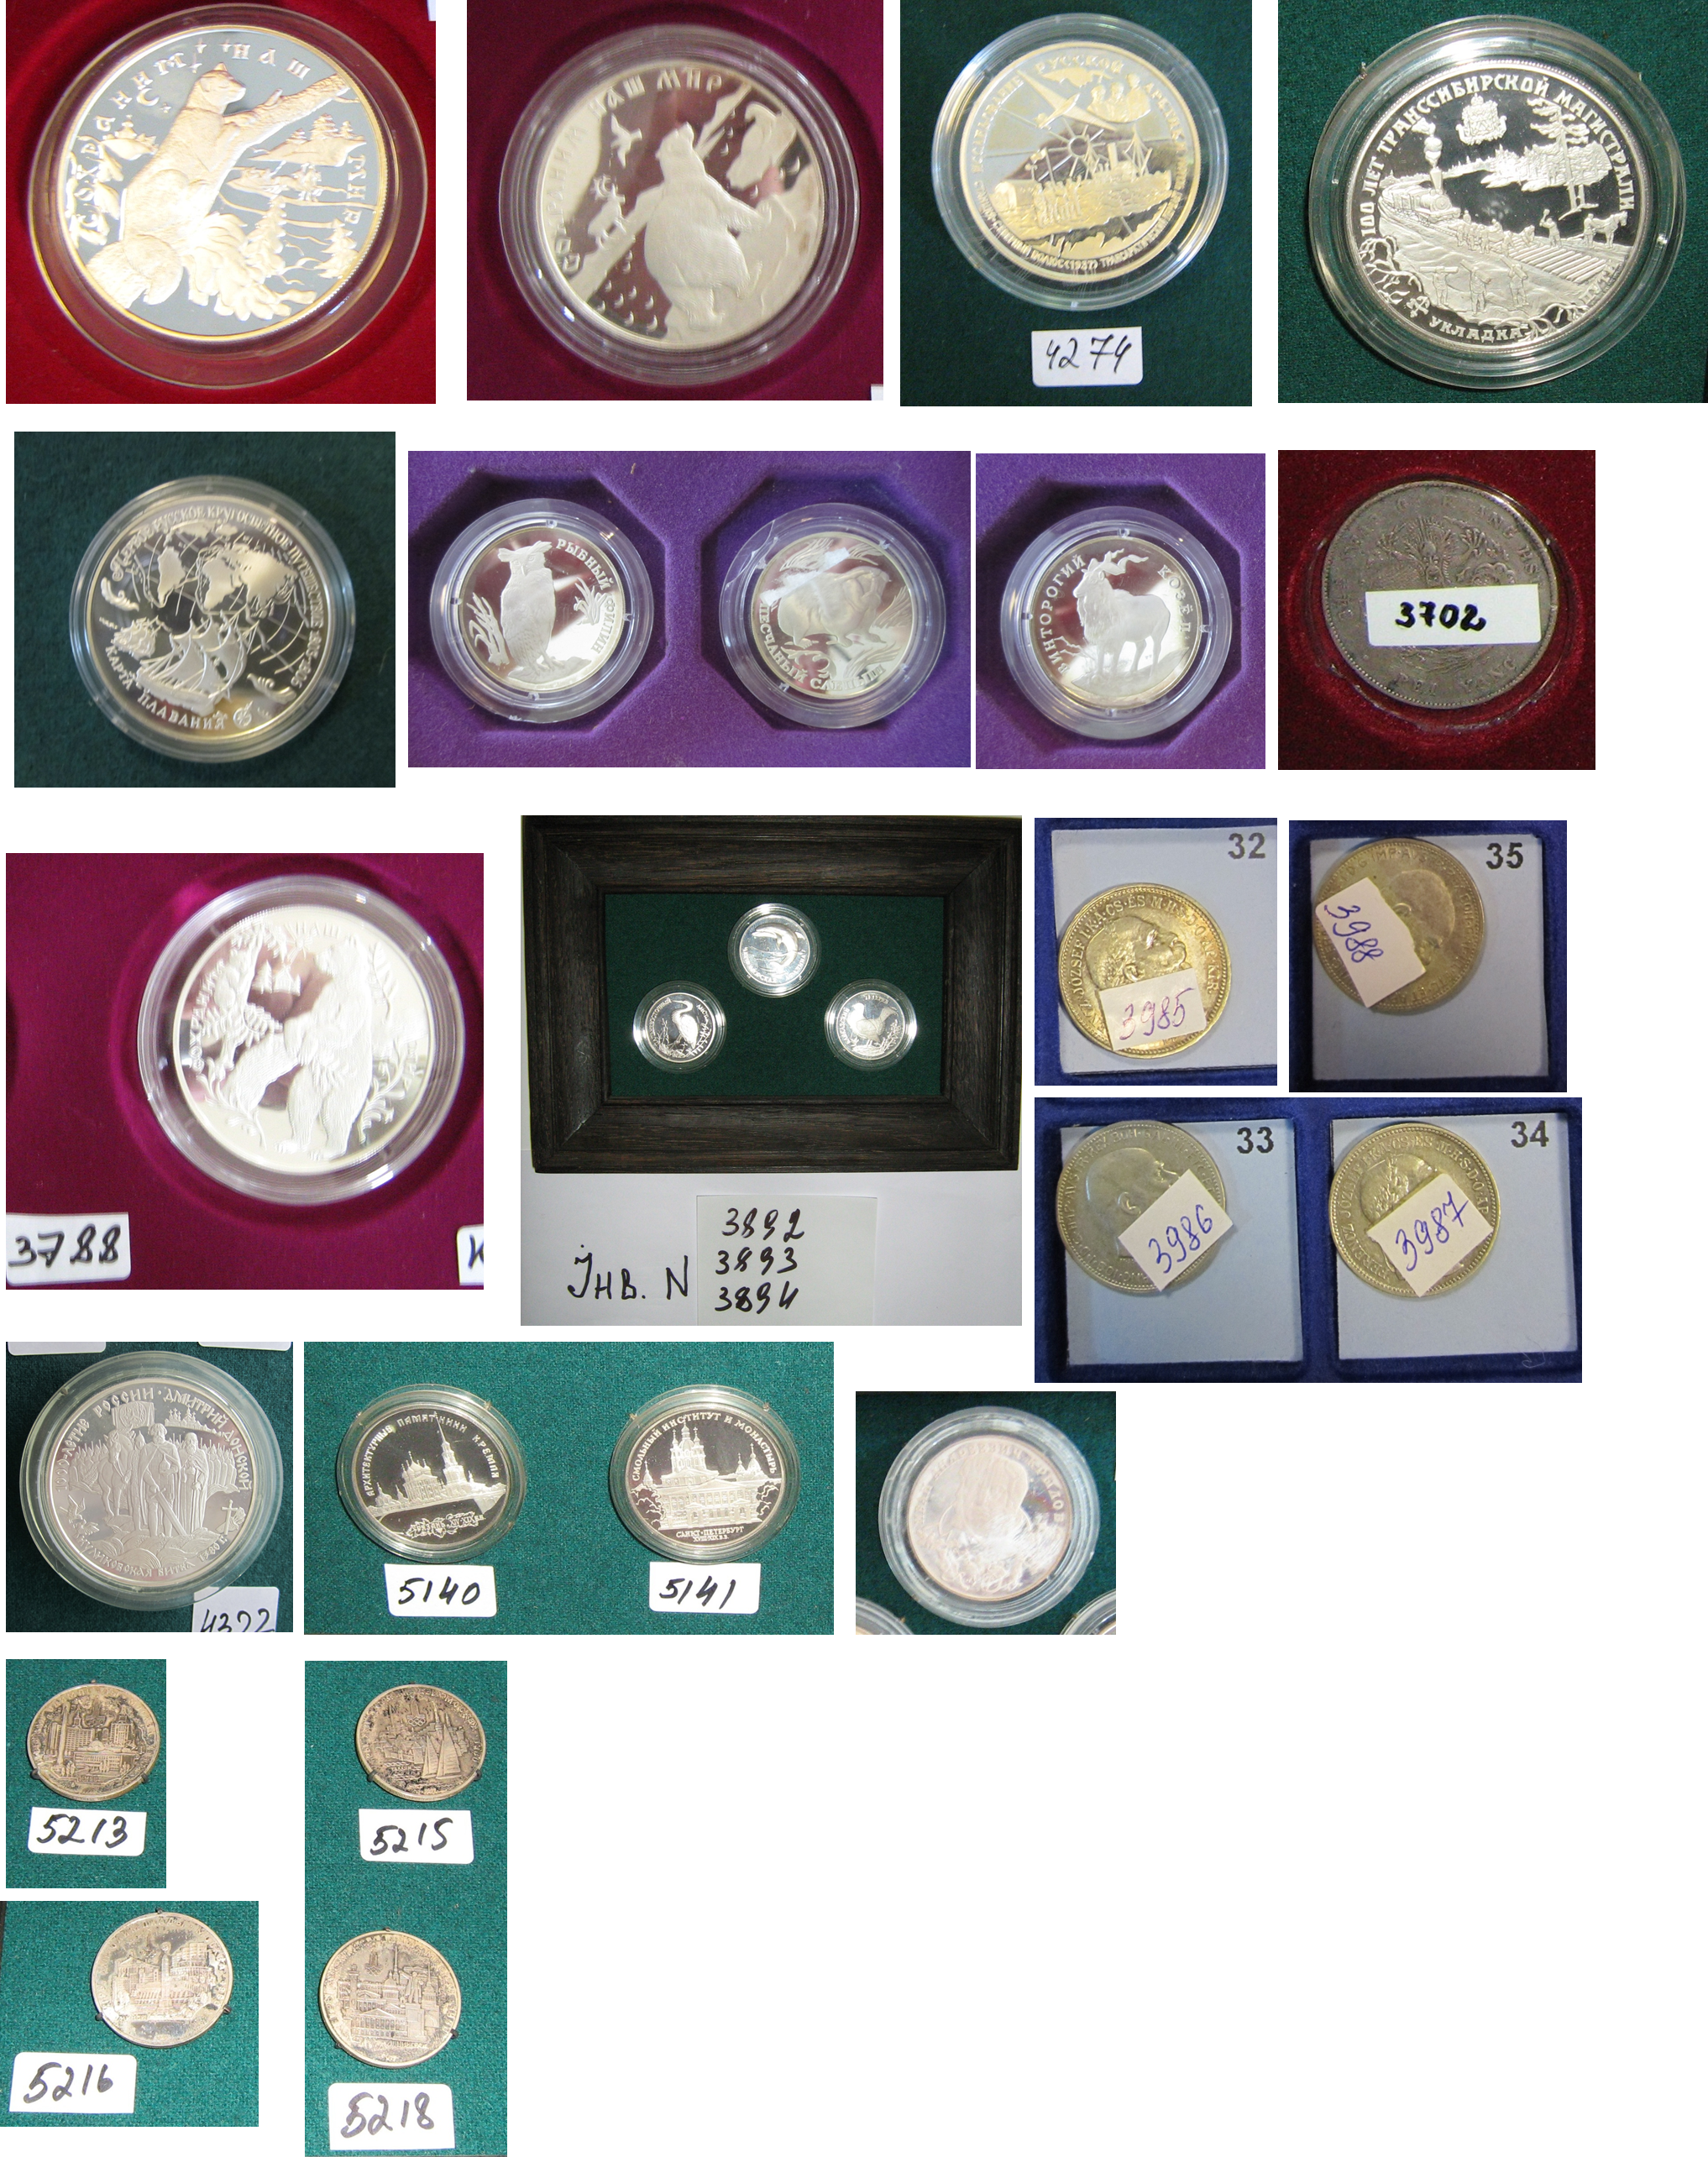 Предмети нумізматики та фалеристики: колекційні срібні монети у кількості 45 одиниць (детальна інформація в публічному паспорті активу)